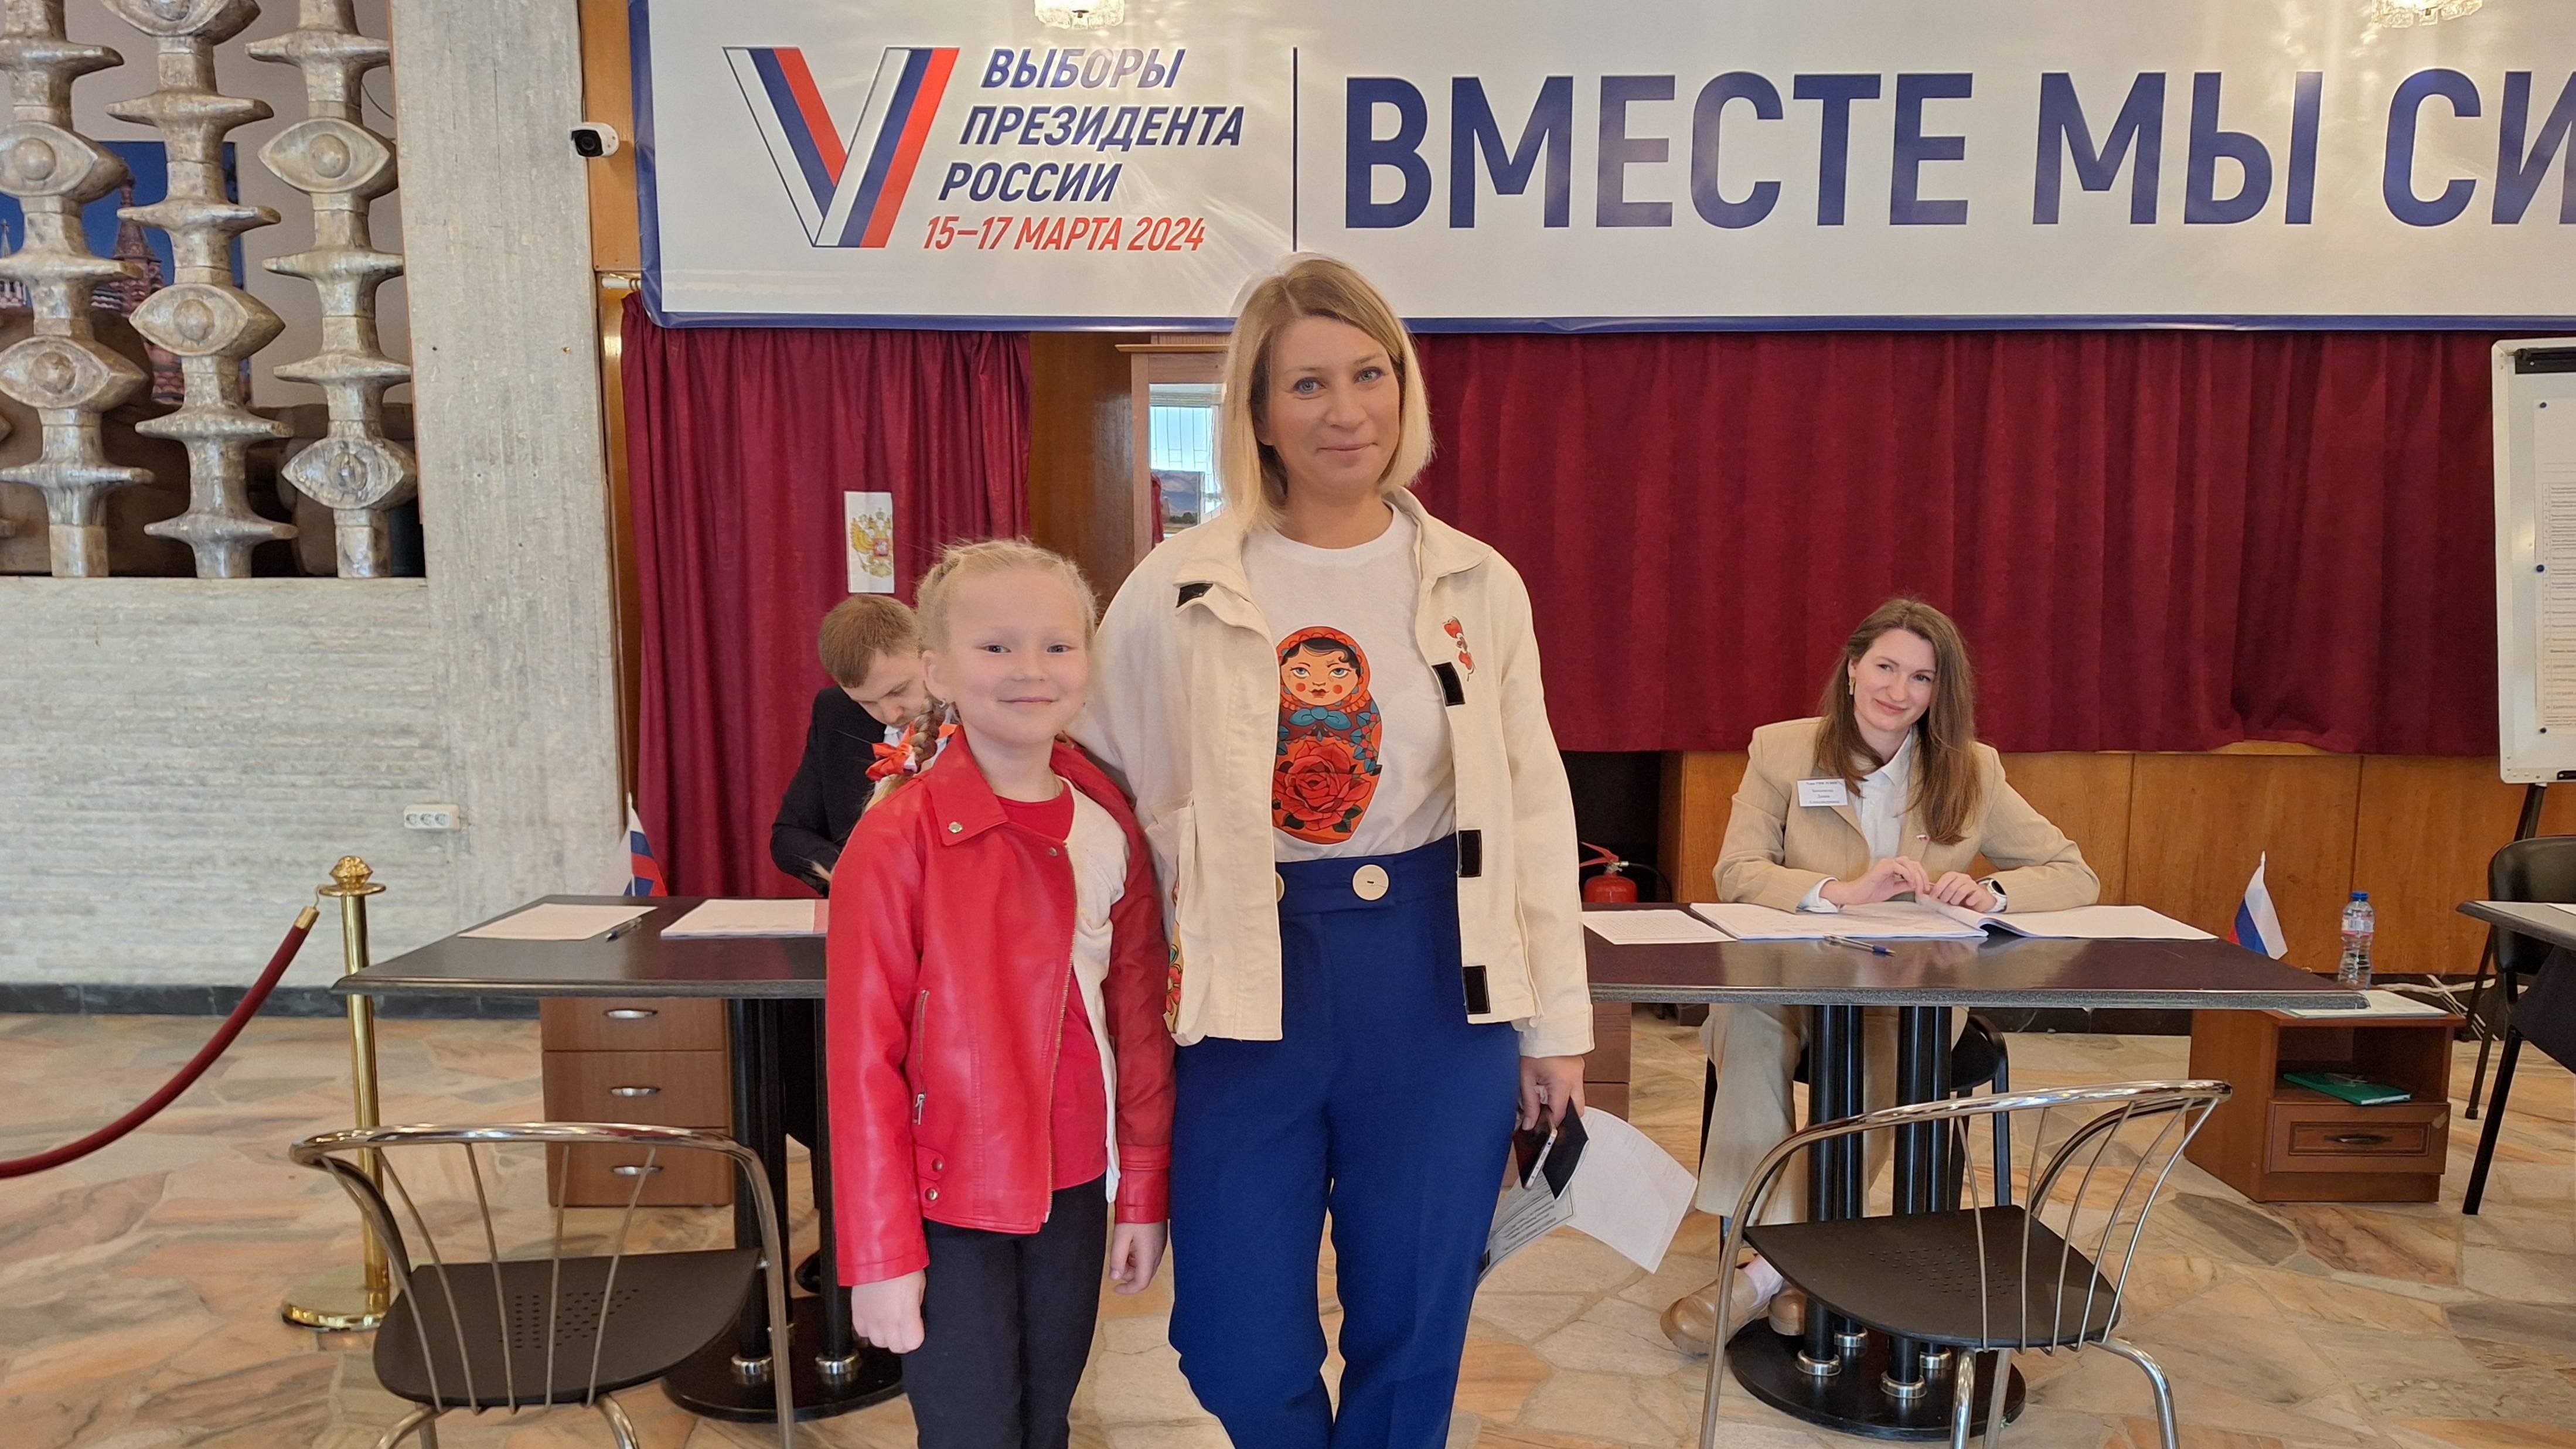 Голосование на выборах Президента Российской Федерации в Посольстве в Болгарии (17 марта 2024 г.)